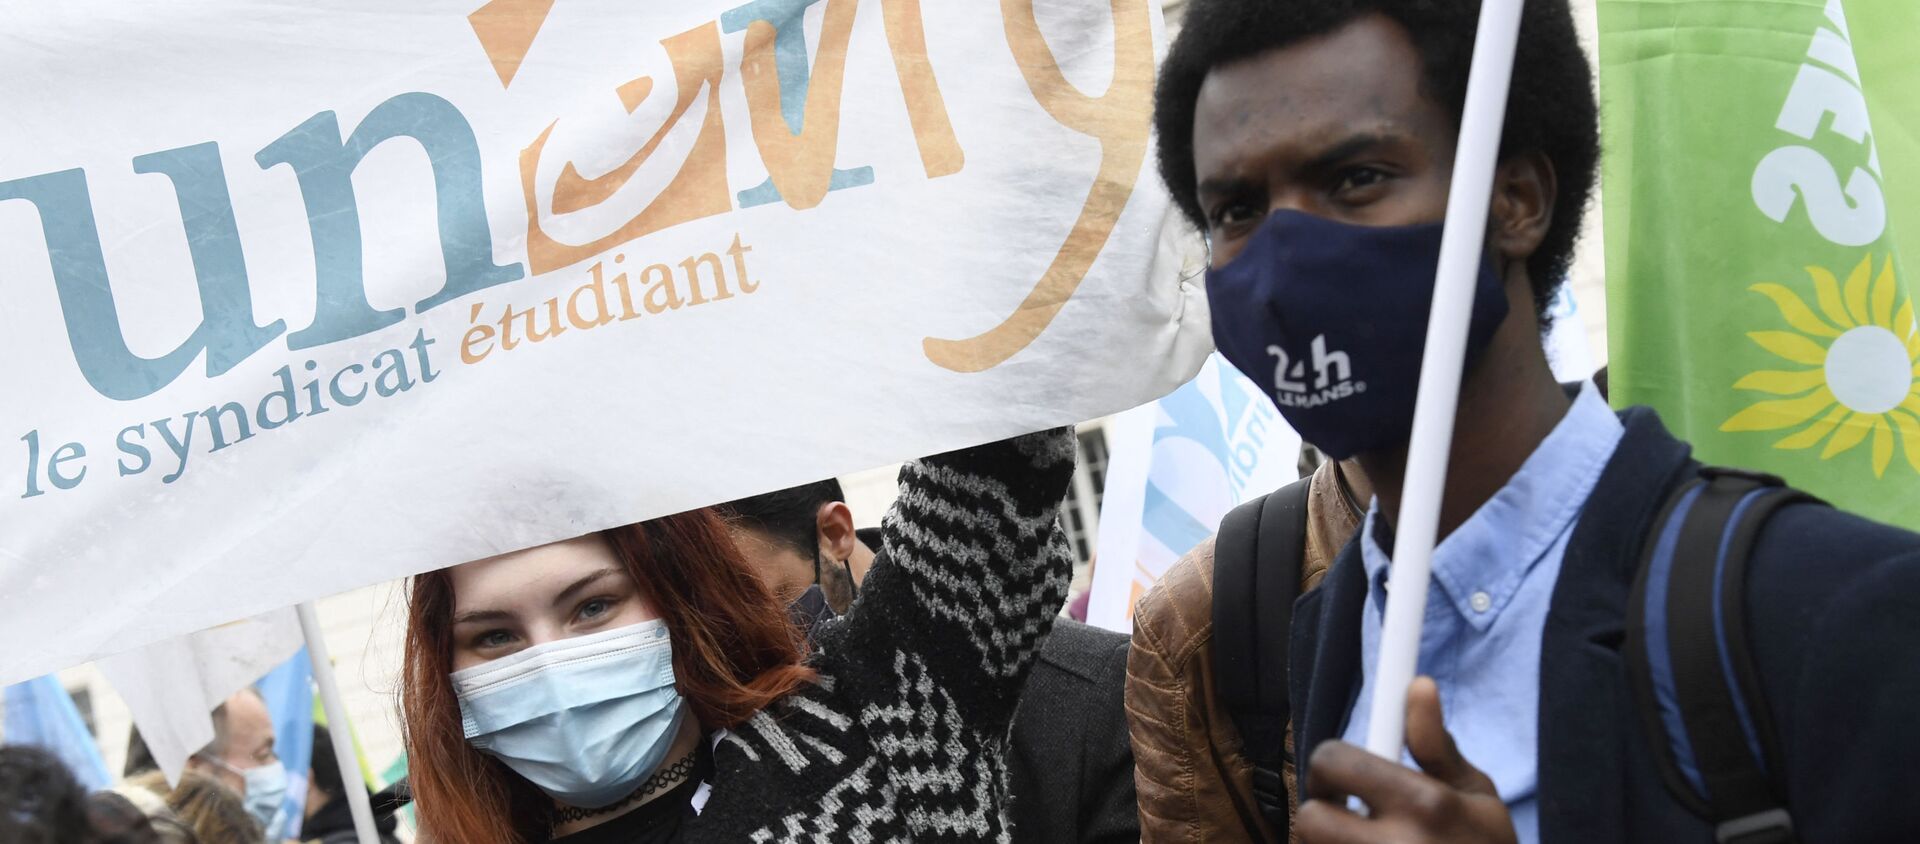 Manifestation de l'Union nationale des étudiants de France (UNEF) contre la précarité étudiante en raison de la crise sanitaire liée à l'épidémie de Covid-19, mars 2021 - Sputnik Afrique, 1920, 19.03.2021